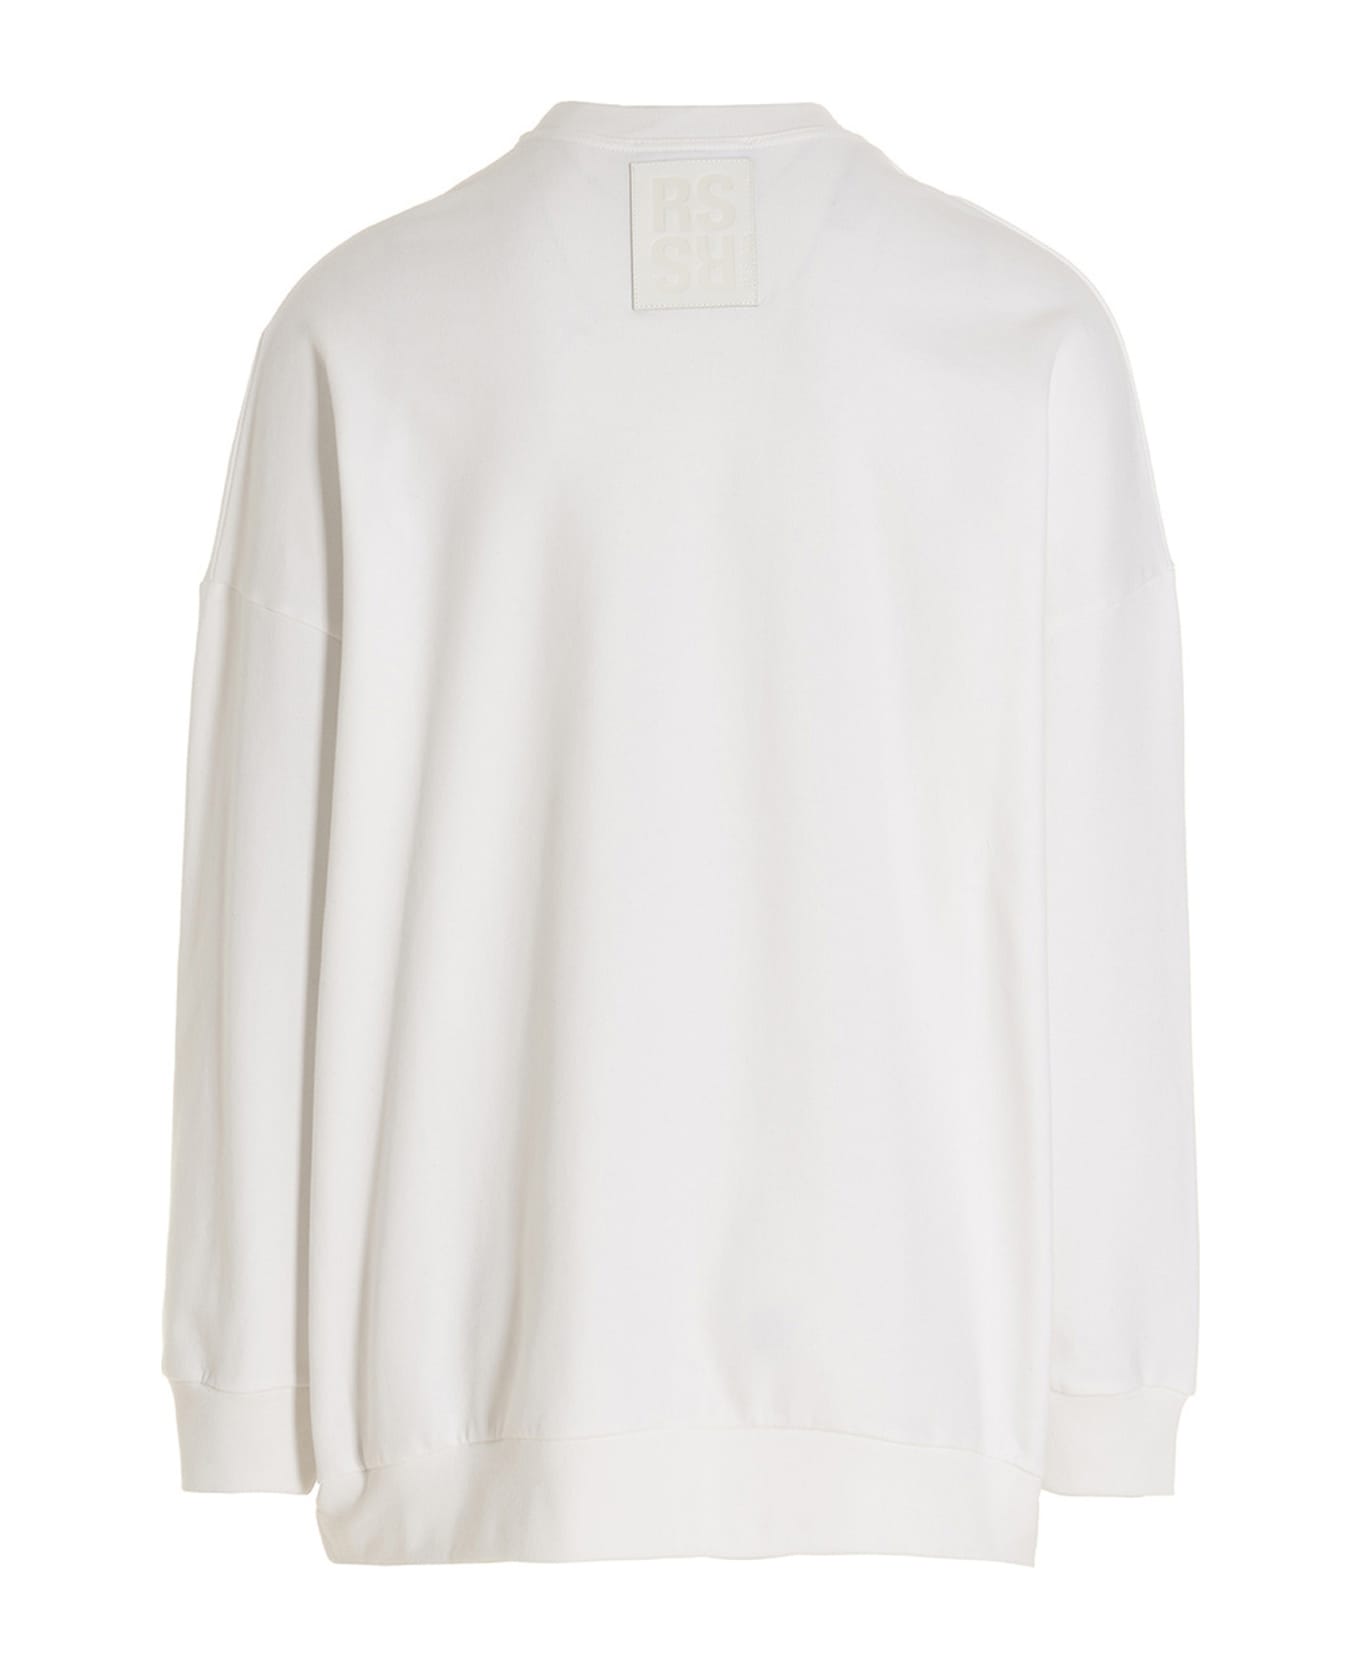 Raf Simons 'r Sweatshirt - White/Black フリース